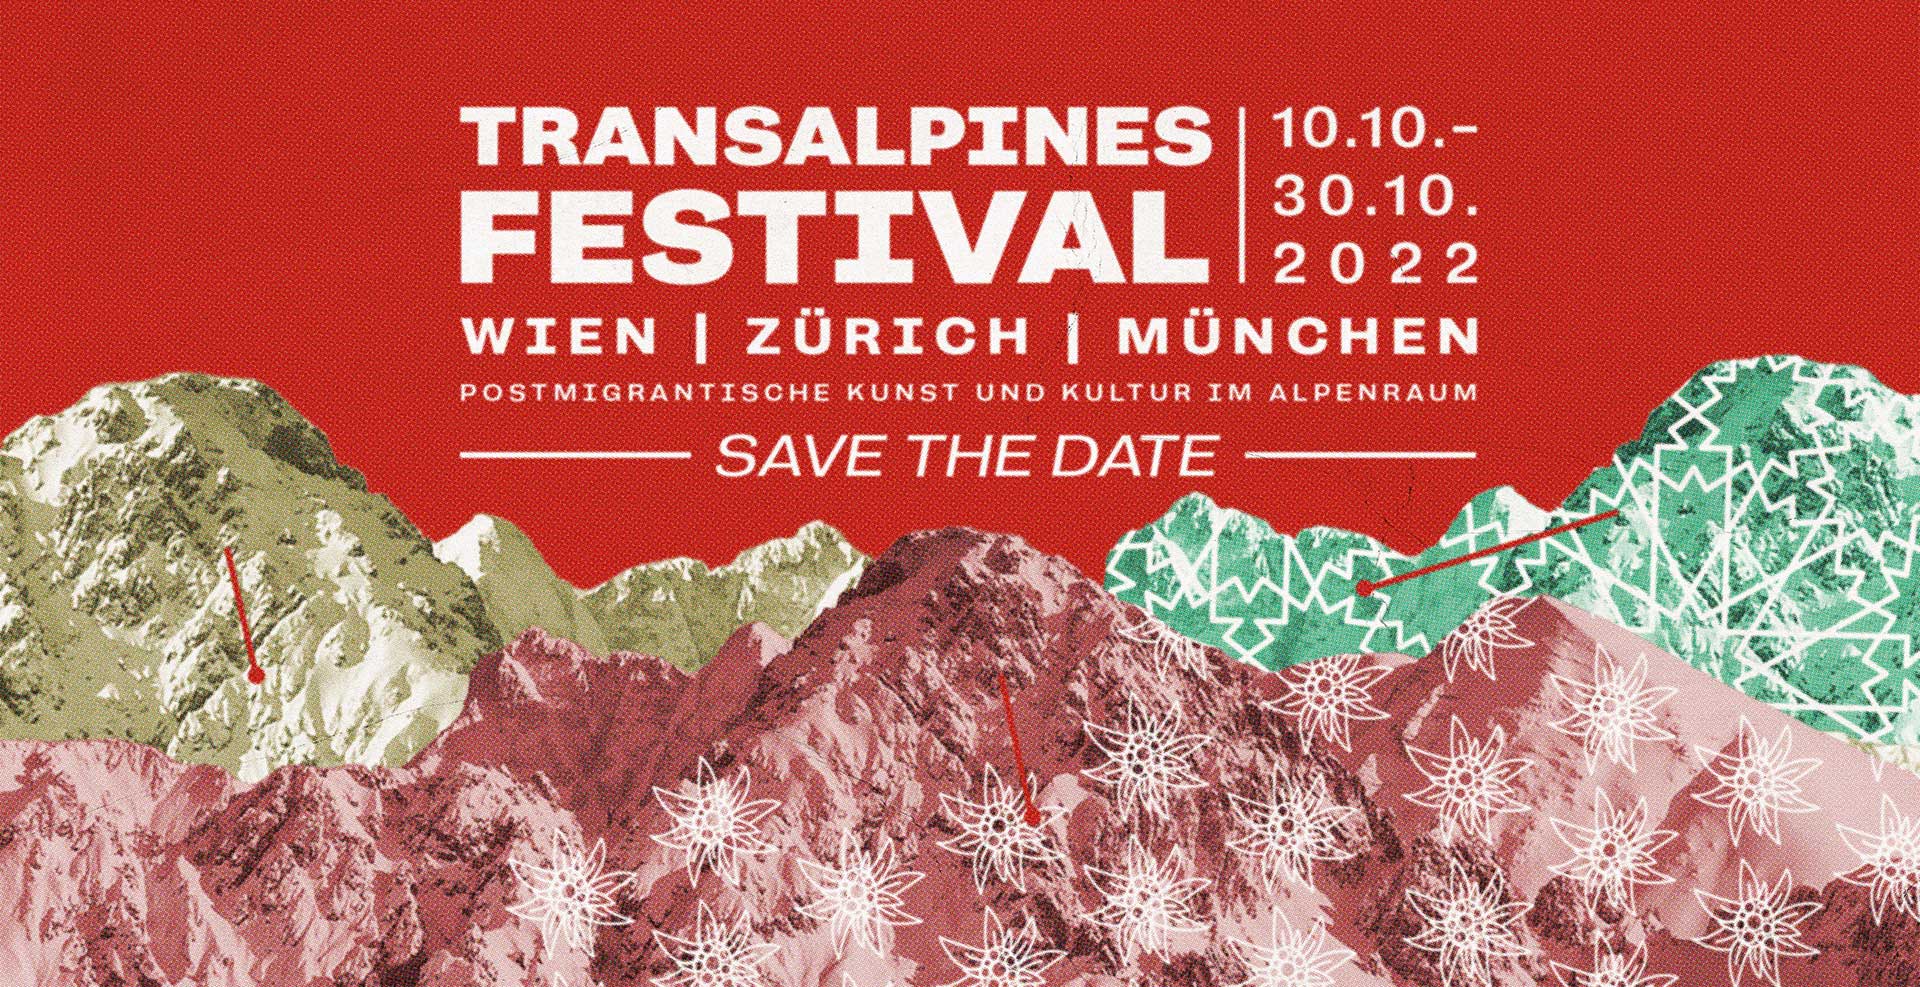 Transalpines Festival 2022